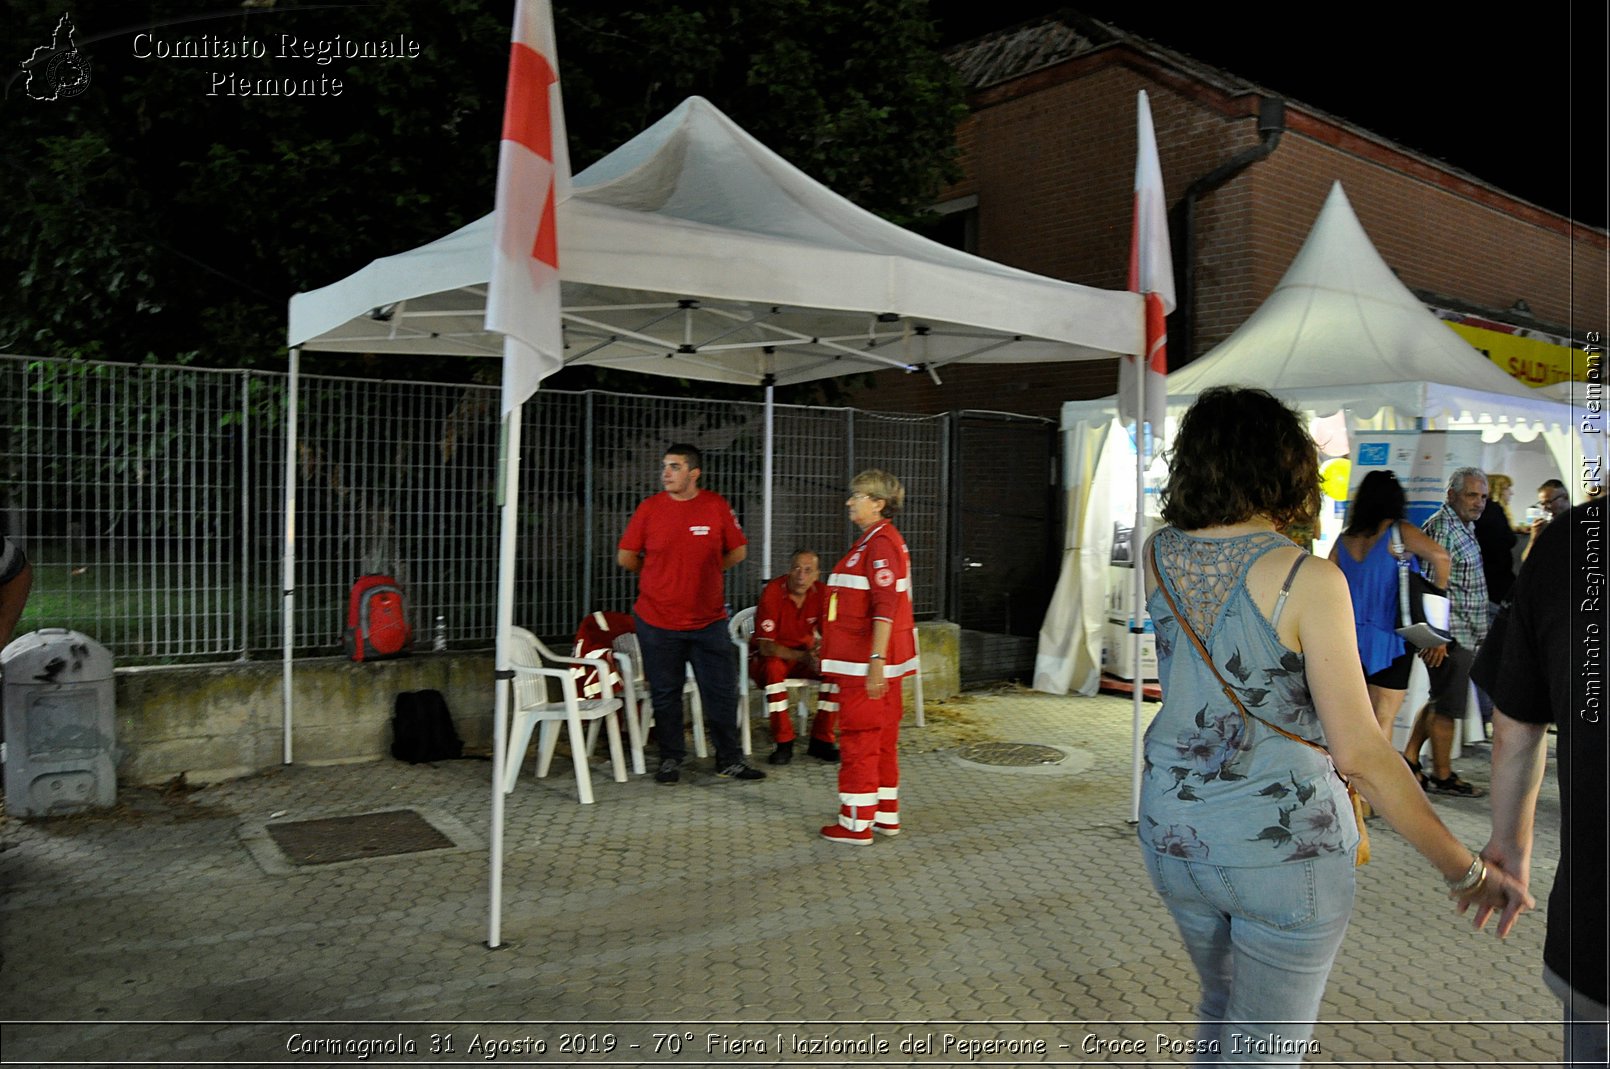 Carmagnola 31 Agosto 2019 - 70 Fiera Nazionale del Peperone - Croce Rossa Italiana - Comitato Regionale CRI Piemonte